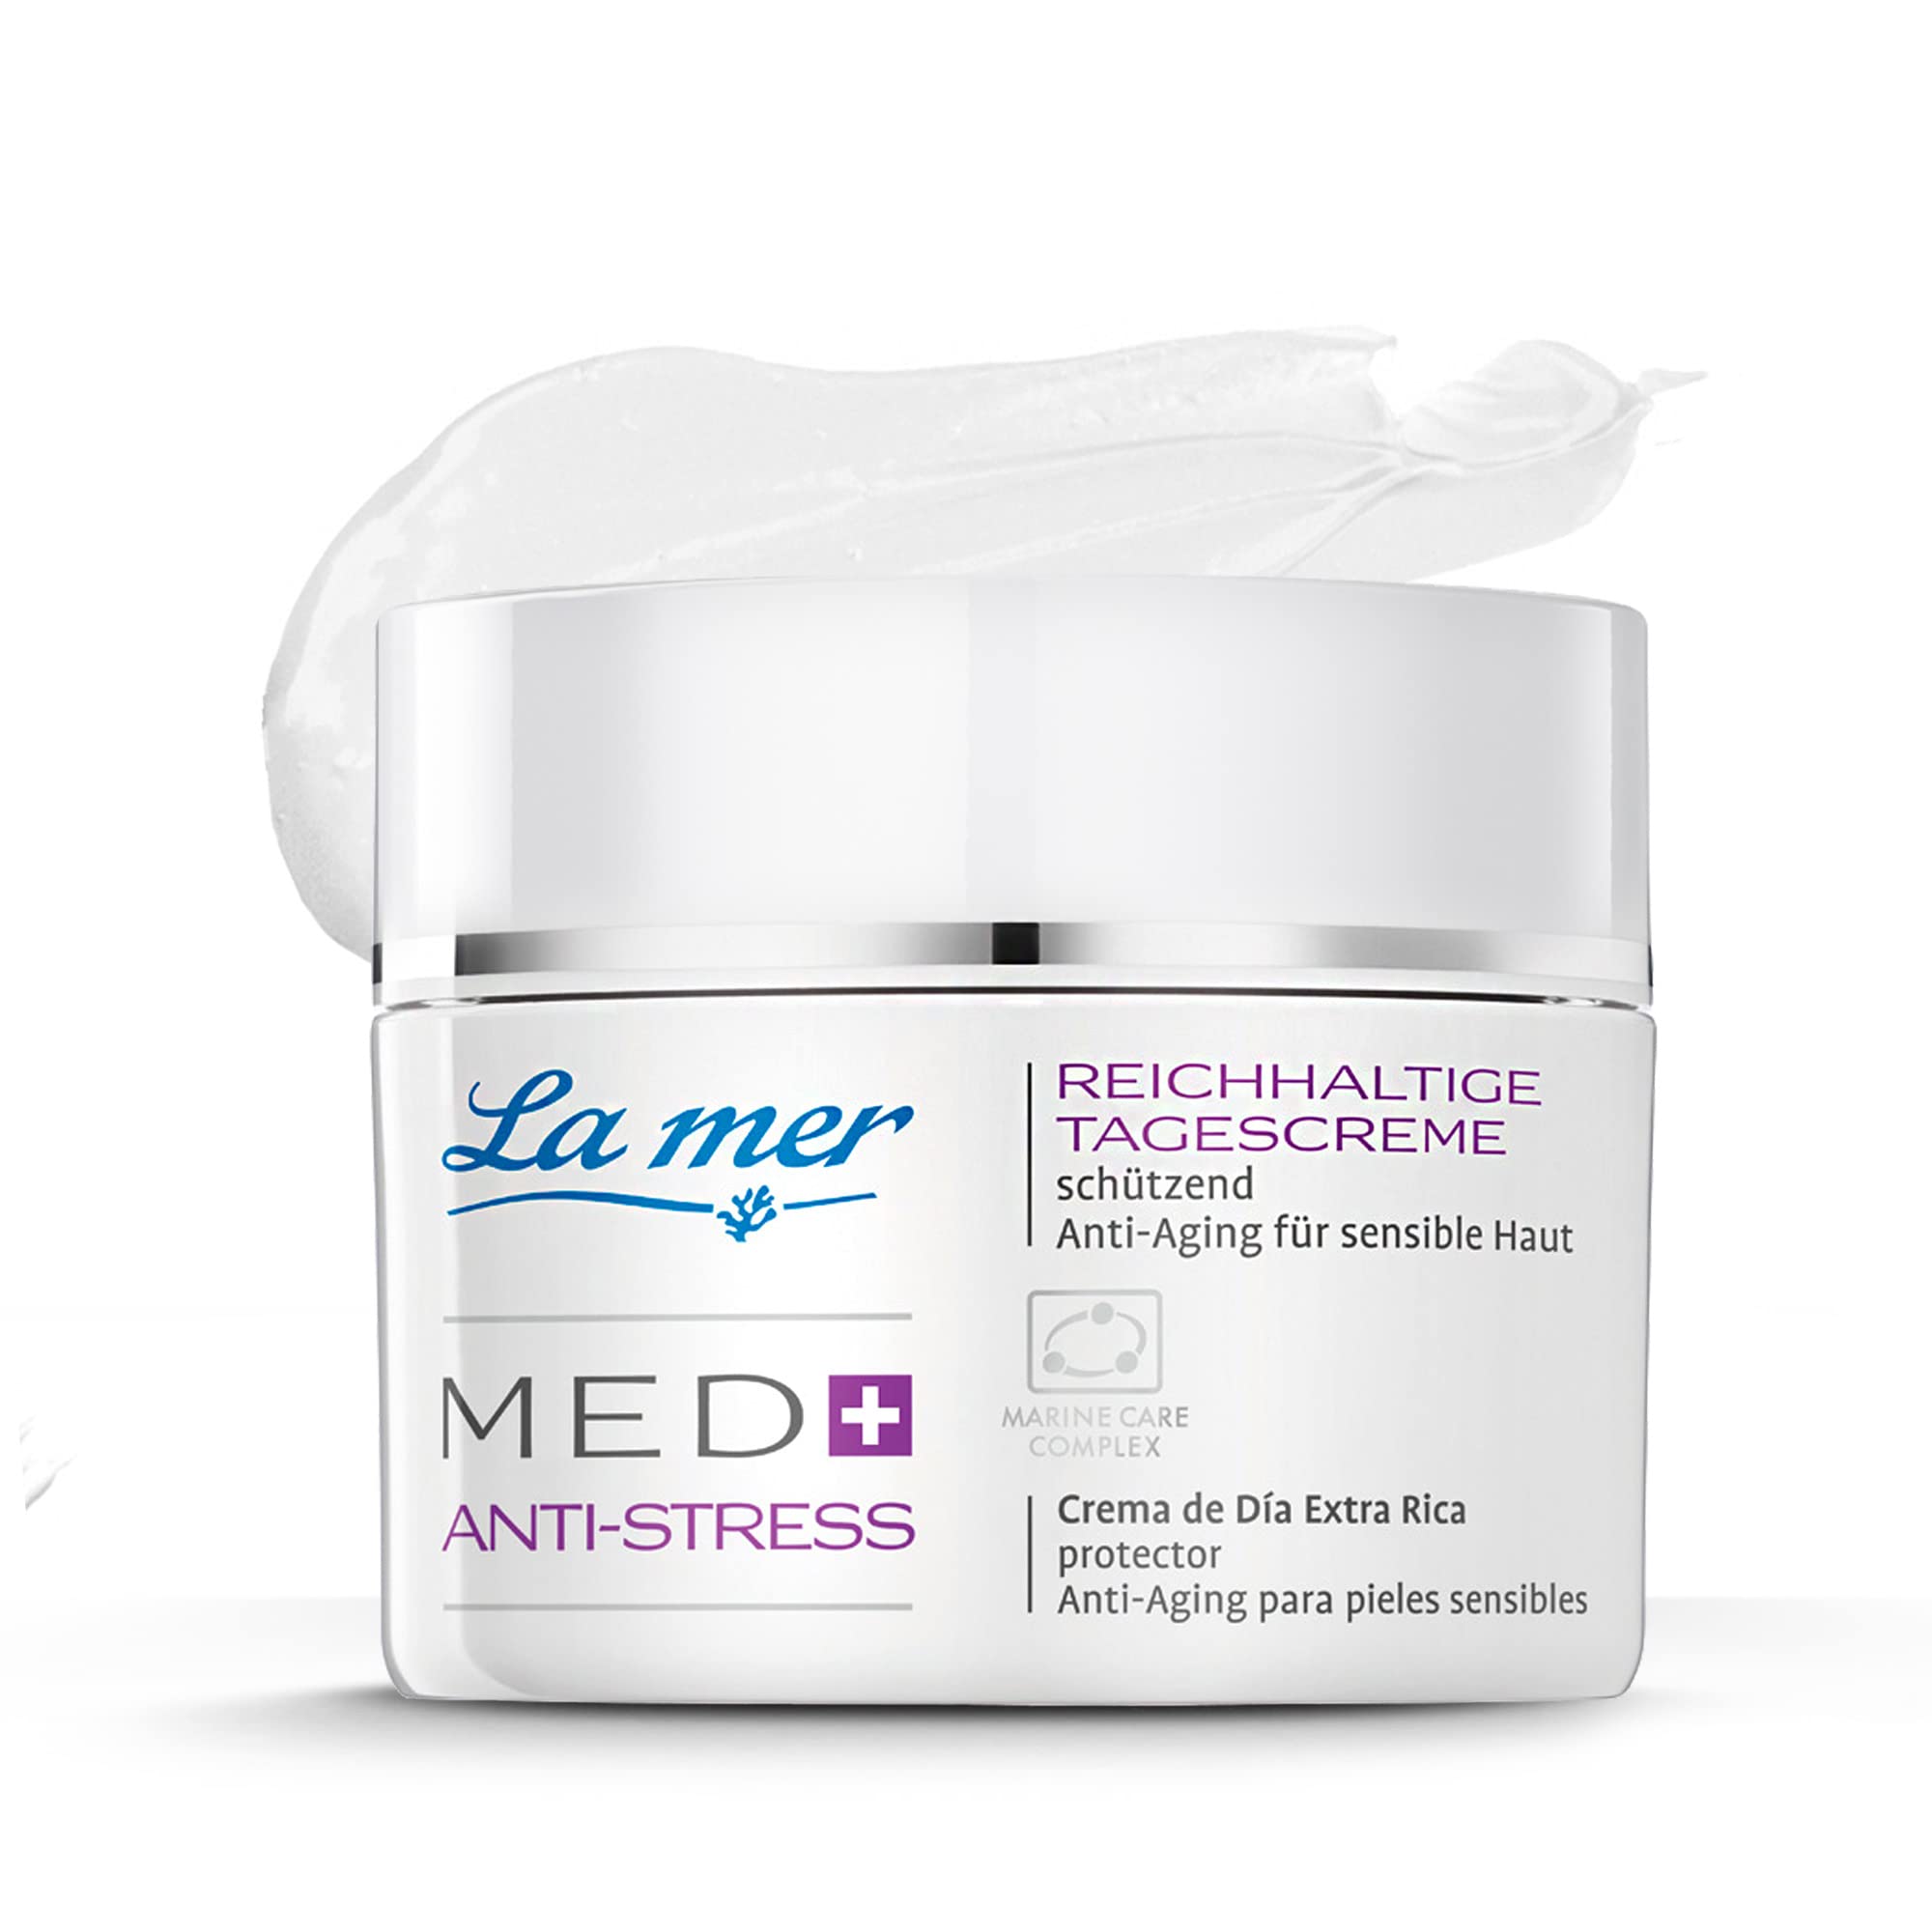 La mer MED+ Anti-Stress Reichhaltige Tagescreme - Gesichtscreme mit Vitamin E & Sheabutter - Intensive Pflege - Mindert oxidativen Stress und schützt vor schädlichen Umwelteinflüssen - 50 ml